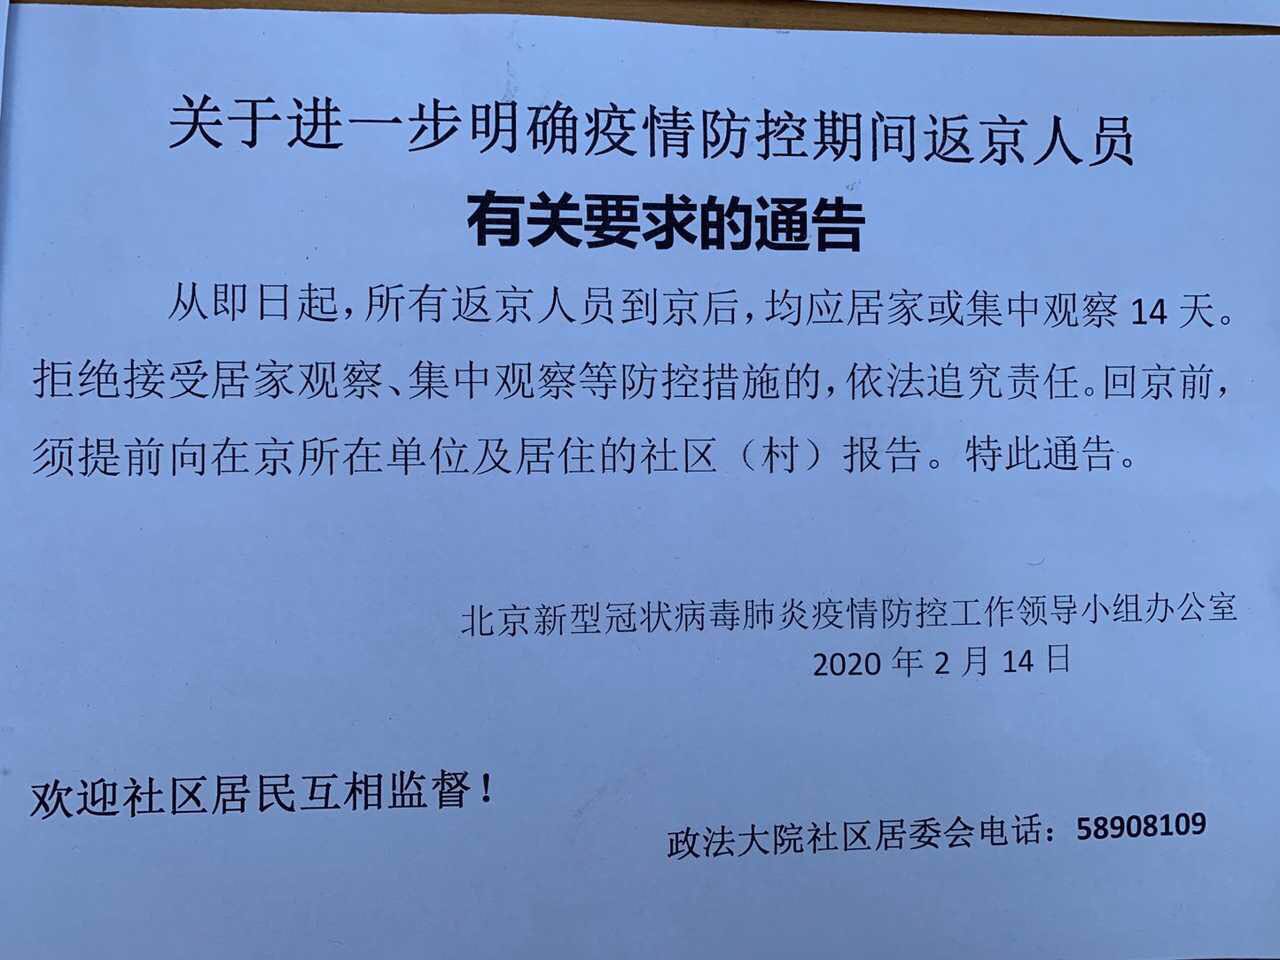 北京某社區居委會在小區內張貼的隔離新政通告]受訪者供圖^